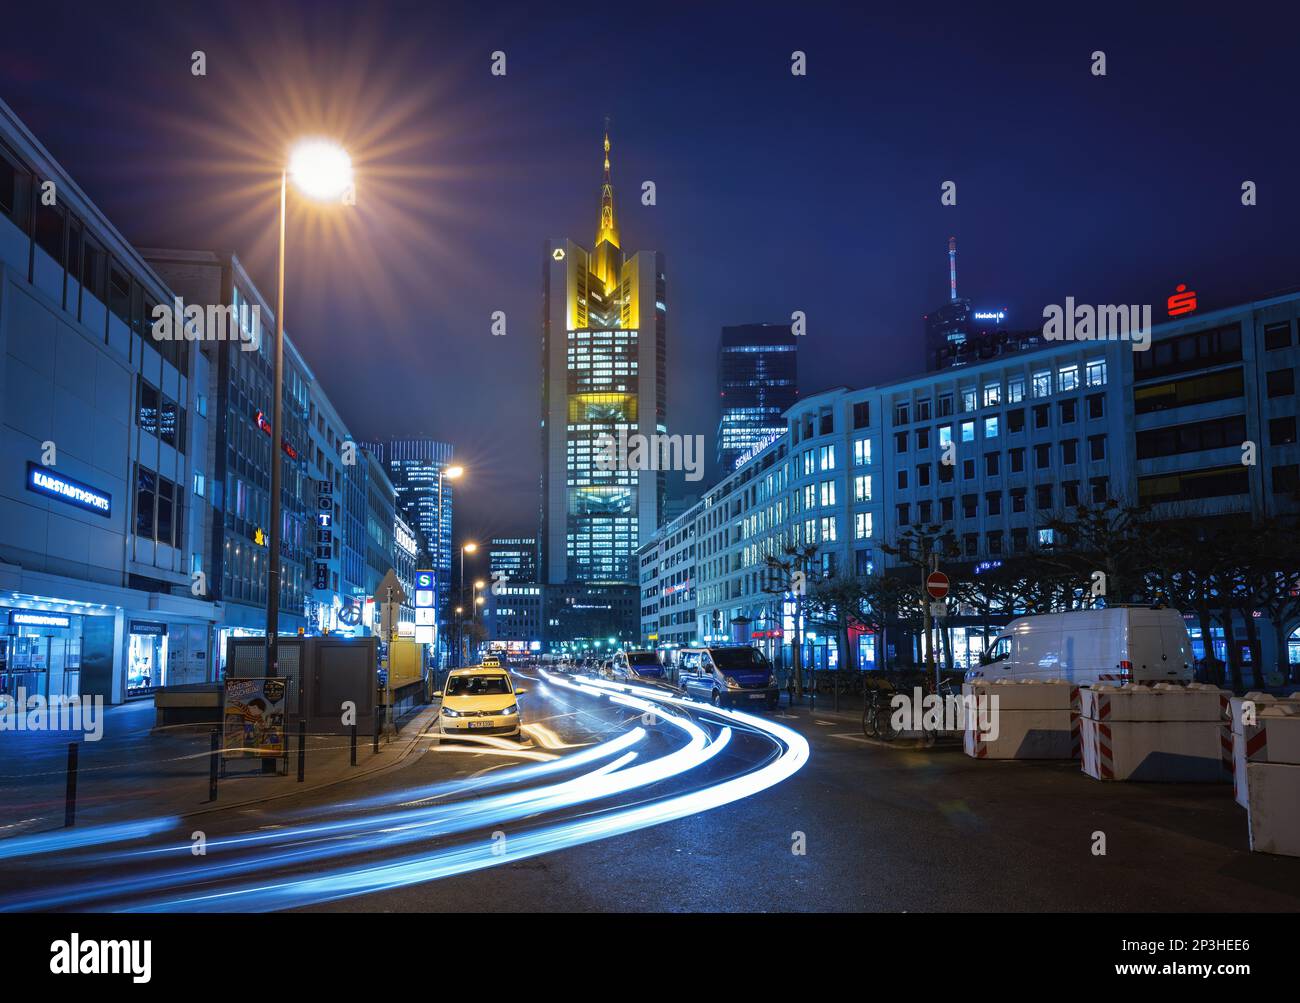 Vista notturna della strada di Francoforte con la Torre Commerzbank e sentieri leggeri - Francoforte, Germania Foto Stock